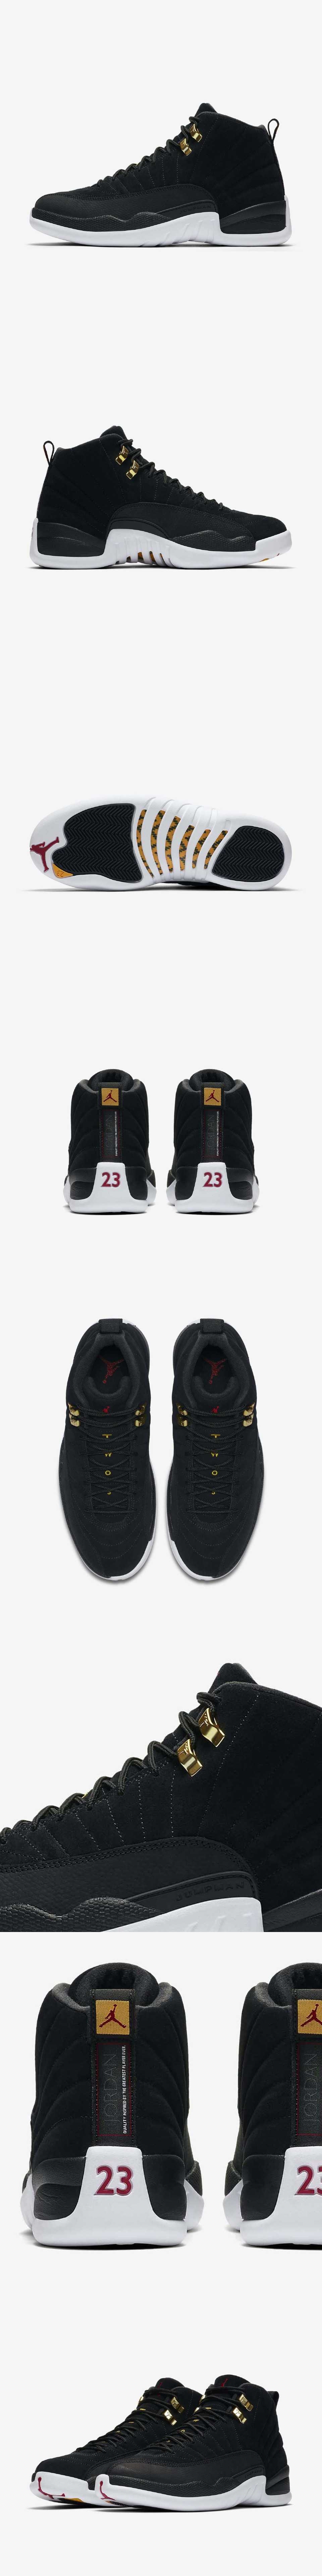 Nike Air Jordan 12代 BG 女鞋